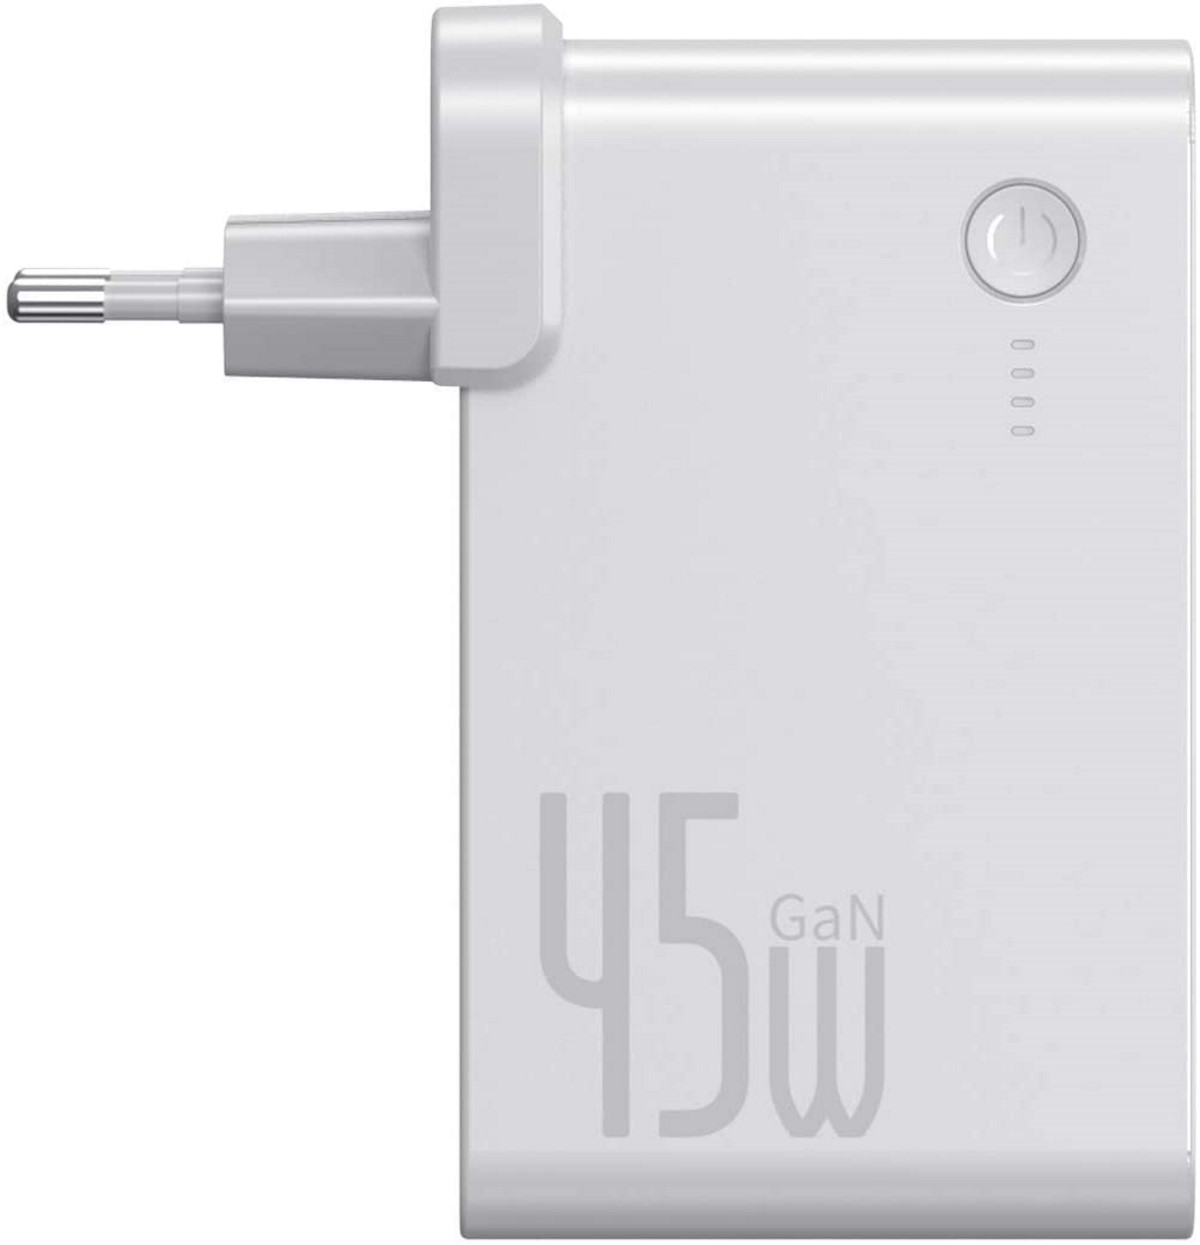 BASEUS 10000mAh Universal, Netzteil inkl. Ladegerät Weiß 45W 2-Fach Powerbank USB